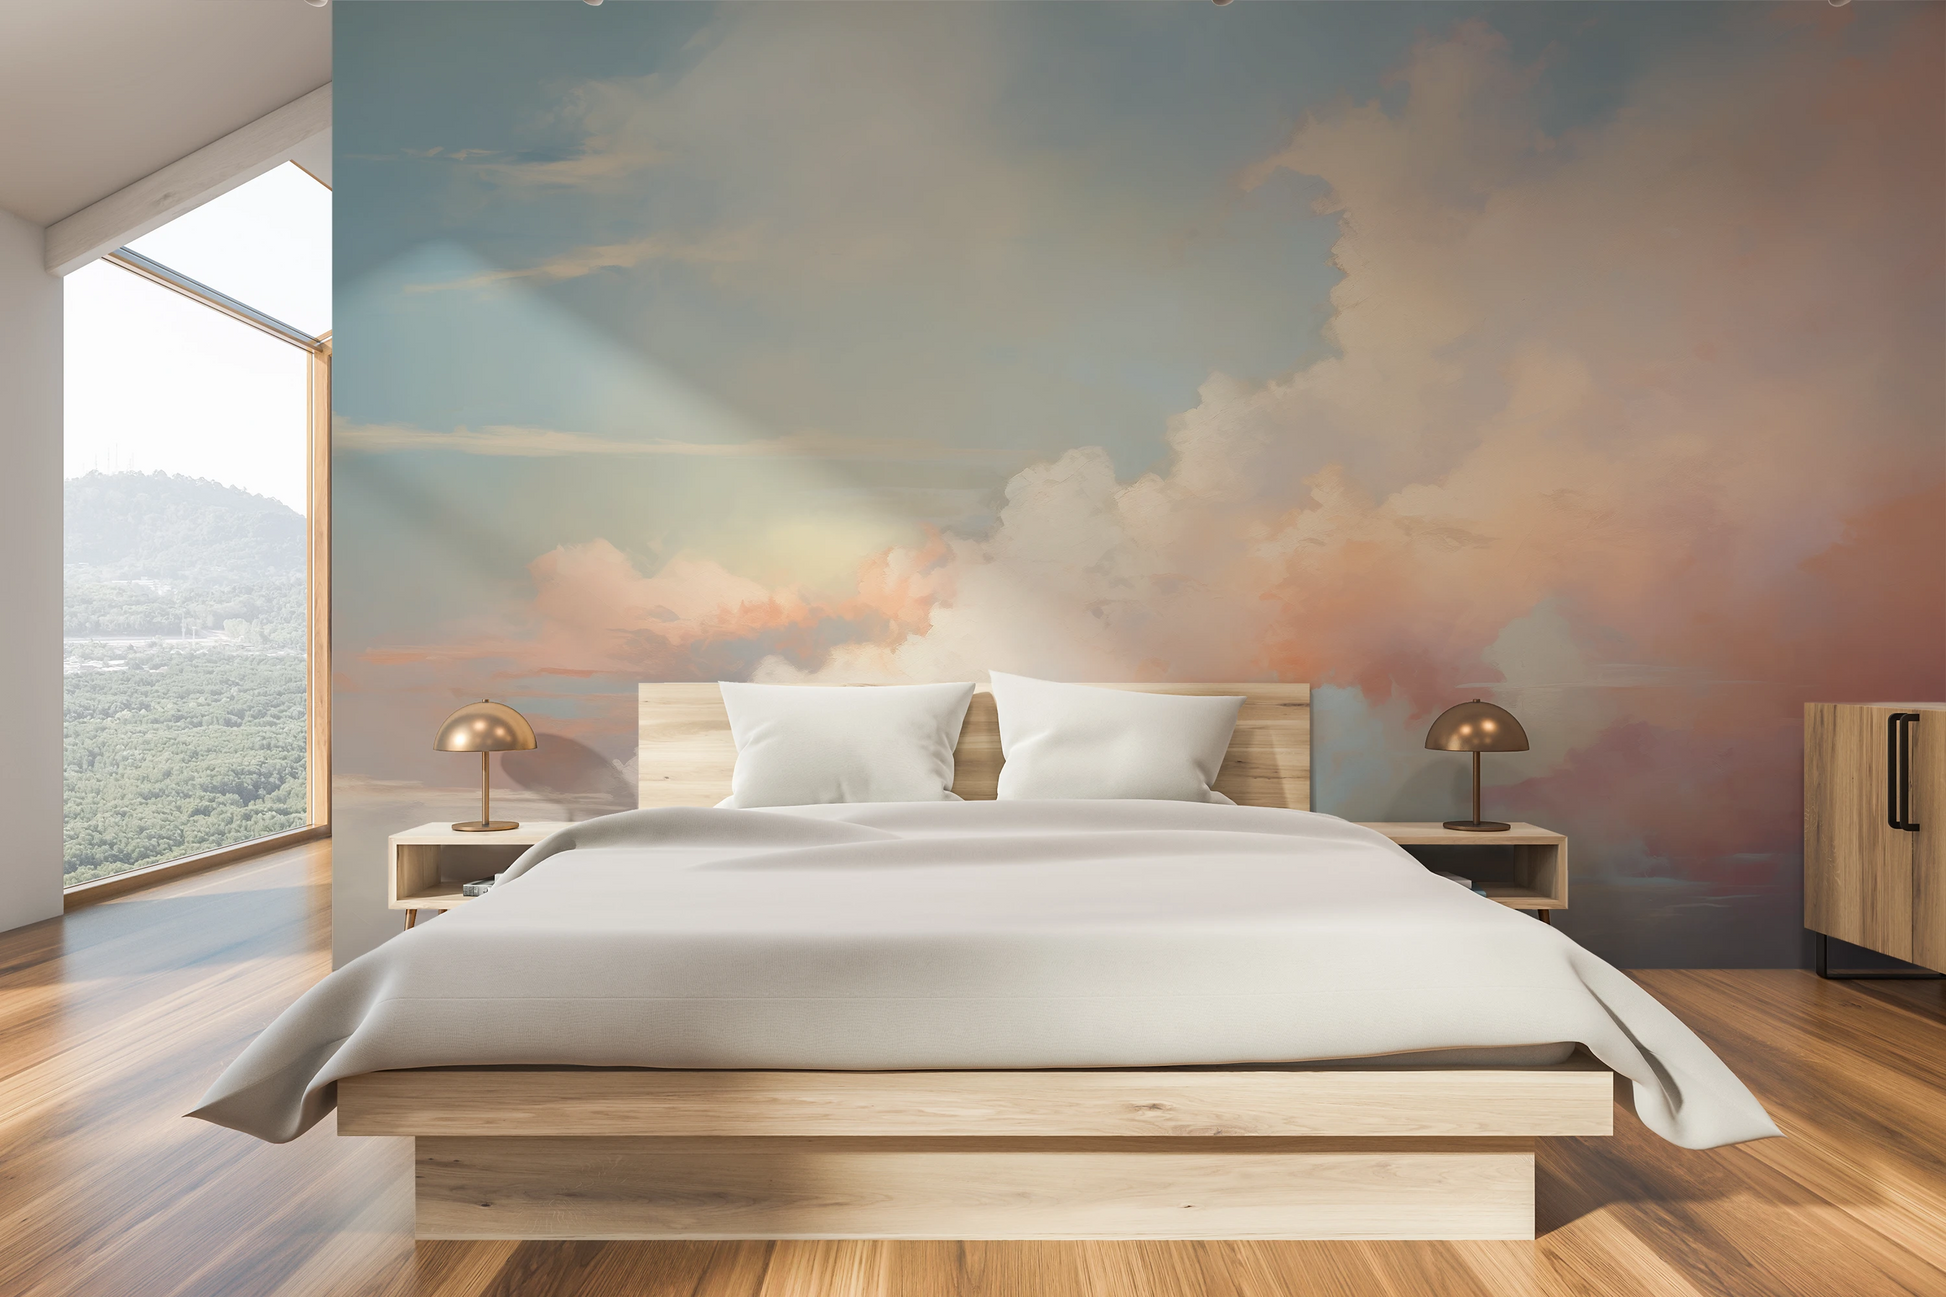 Fototapeta malowana o nazwie Pastel Dream #2 pokazana w aranżacji wnętrza.